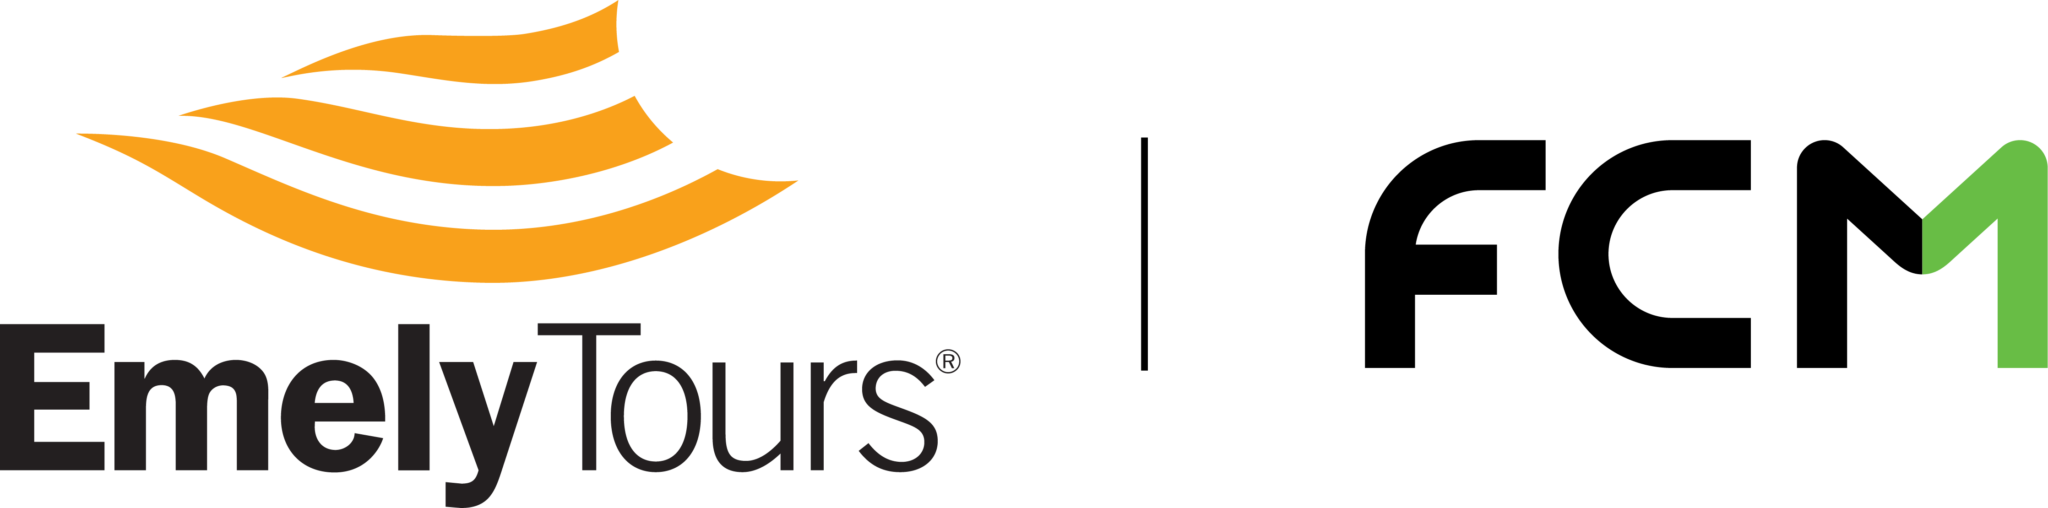 Buscobus Logo